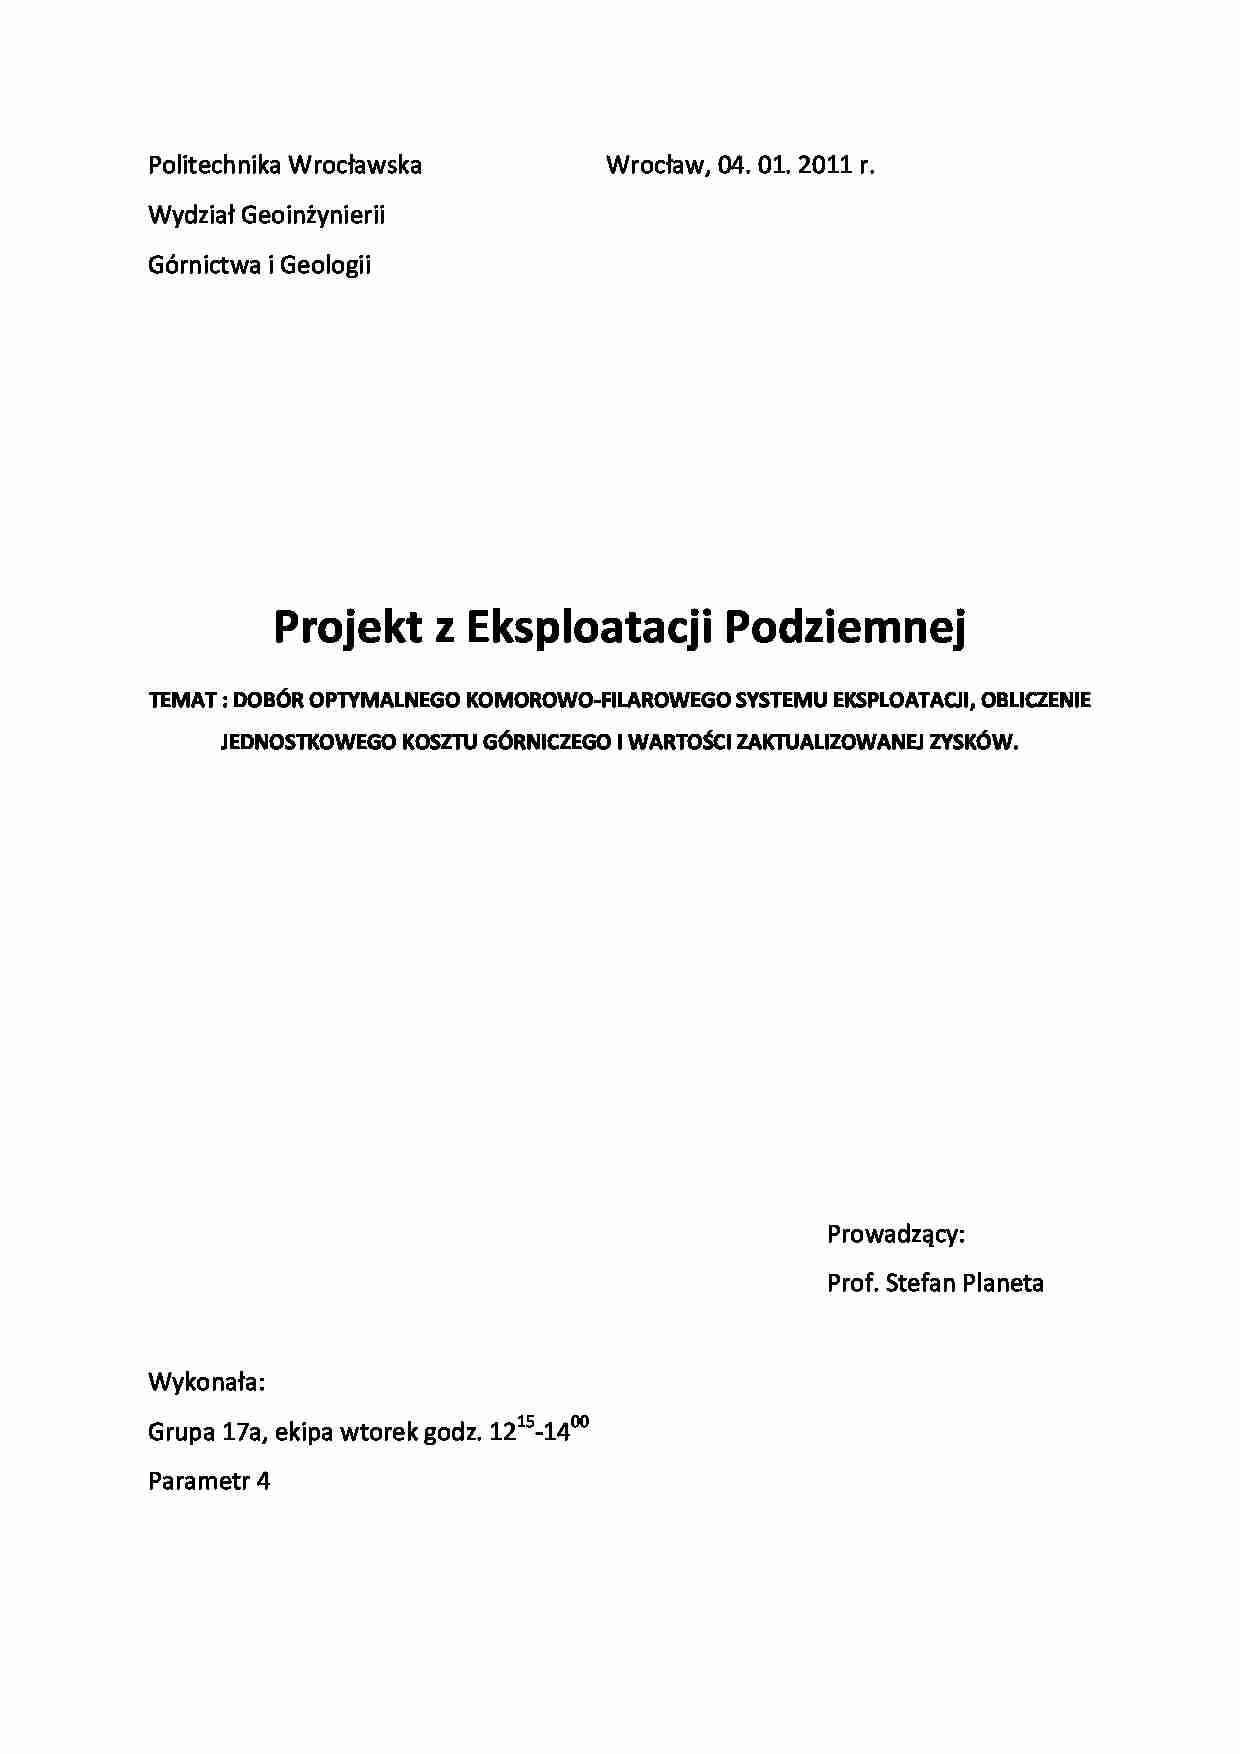 Dobór optymalnego komorowo-filarowego systemu eksploatacji - projekt - strona 1